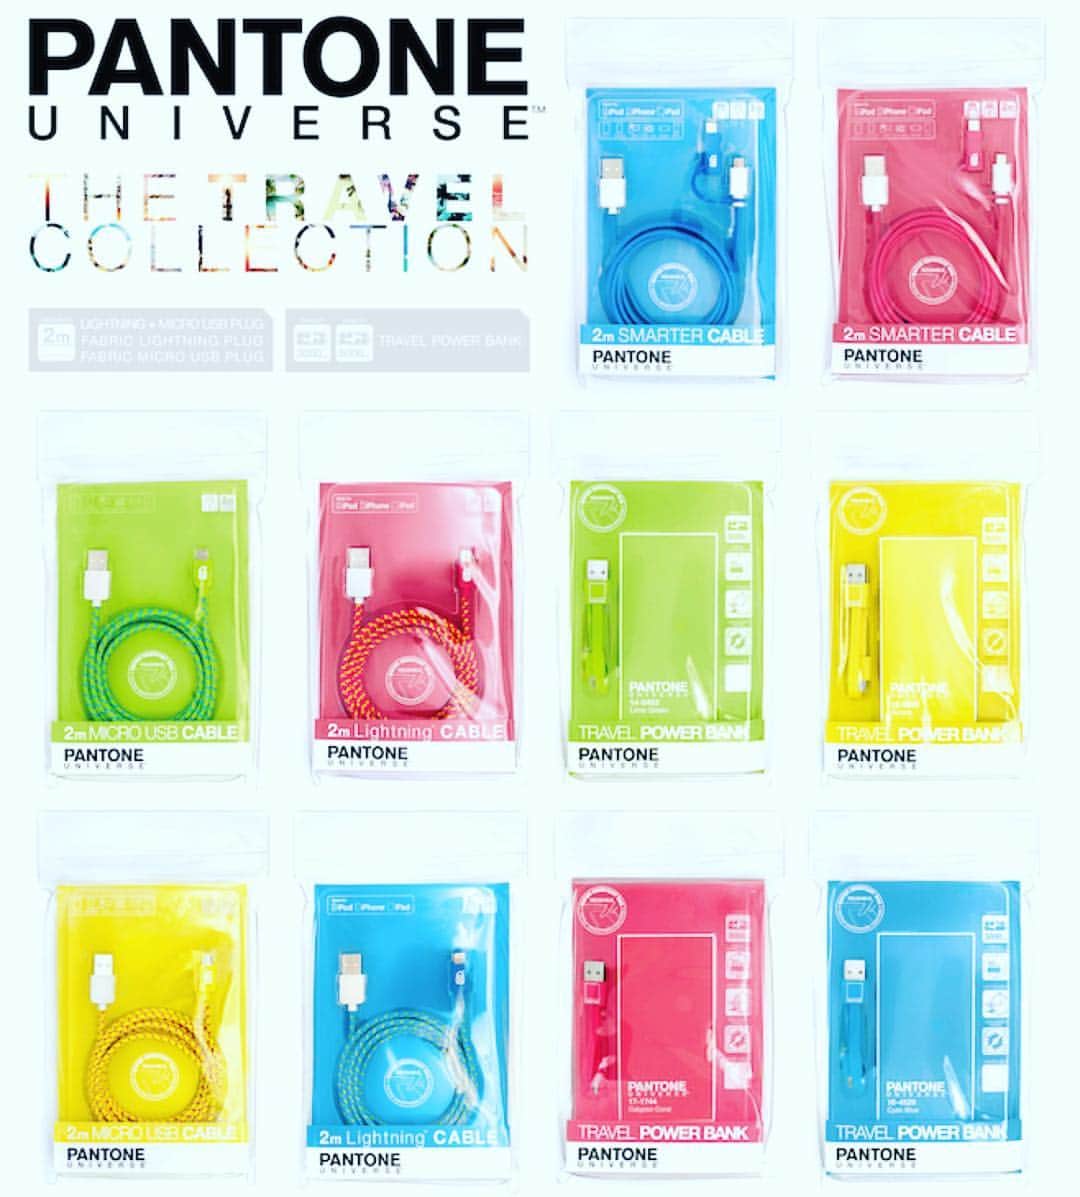 ケースシナリオのインスタグラム：「Get ready for summer! #tgisf #fbf to our #fun and #colorful @pantone #travel #collection #pantone #casescenario 💛💚💙💗👙🎾🏄🏼⛳️🏊🏽」